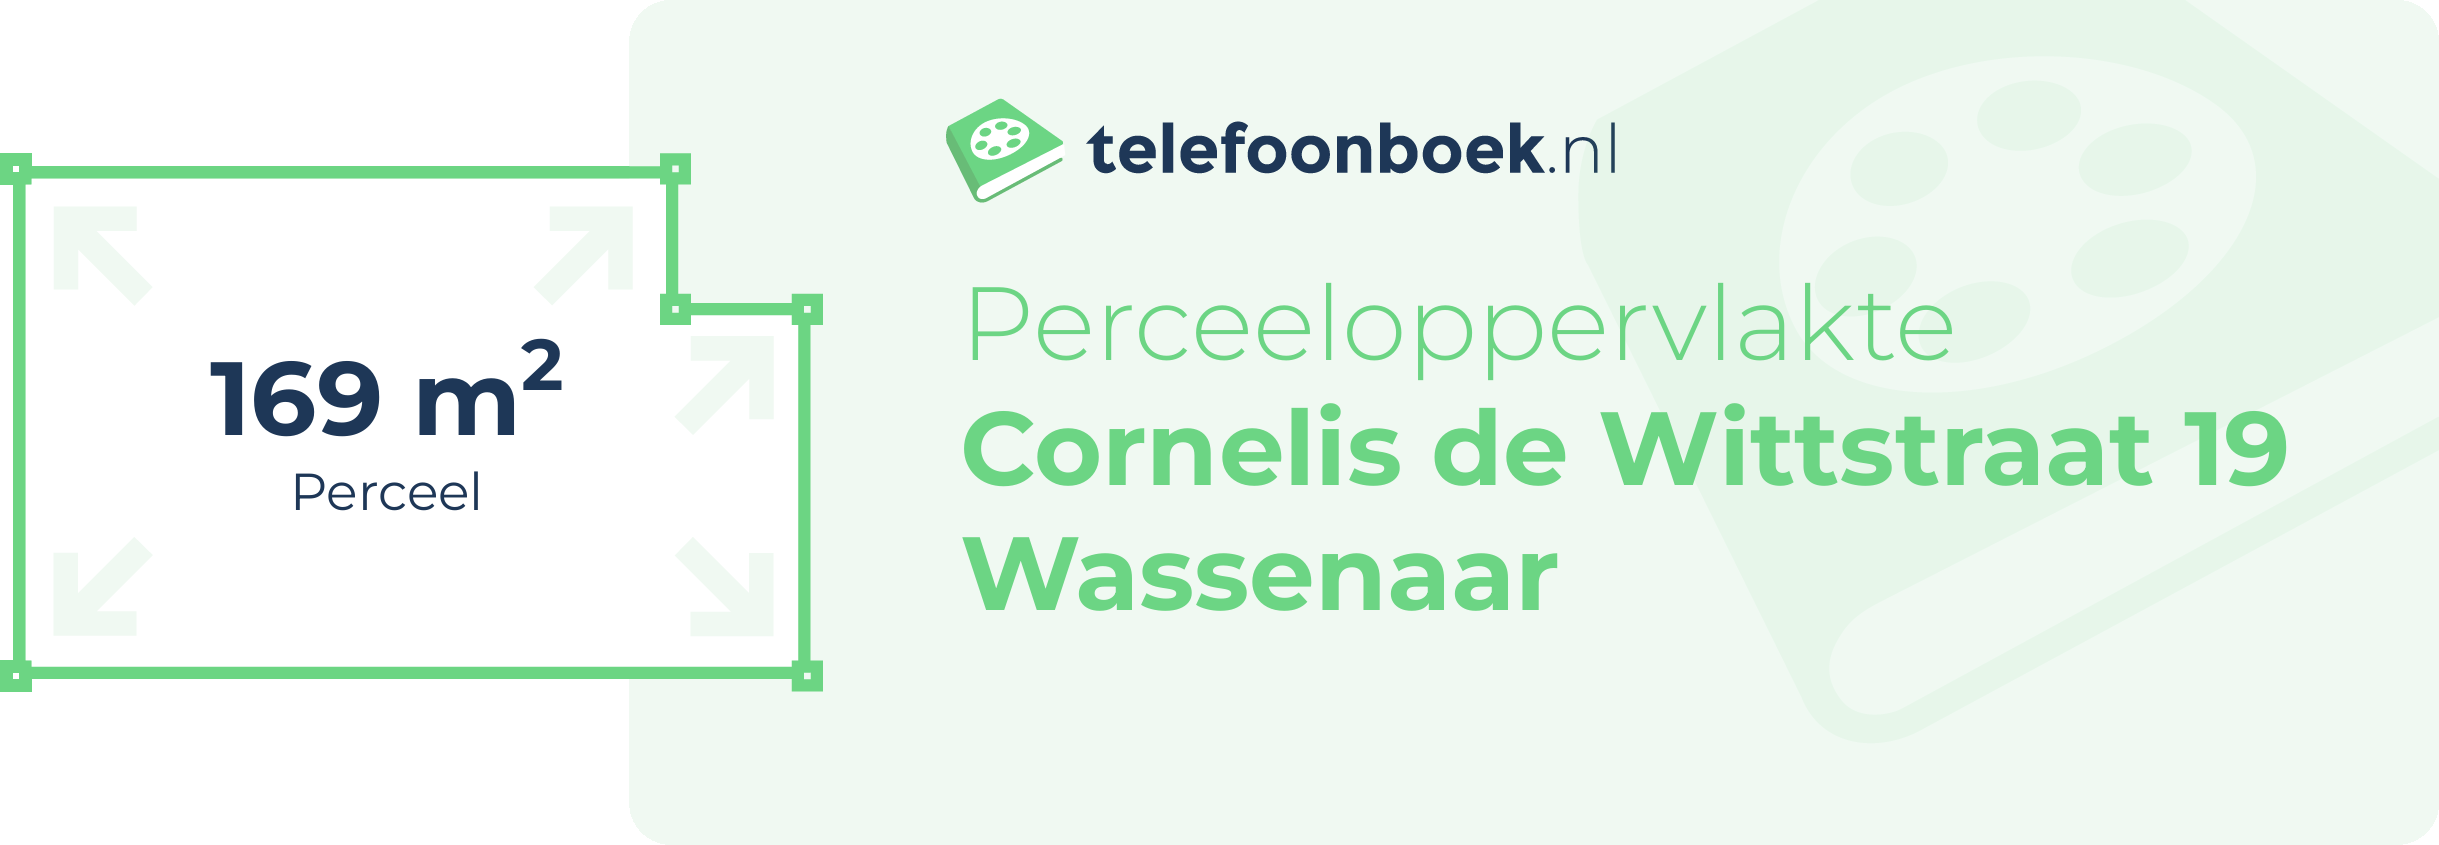 Perceeloppervlakte Cornelis De Wittstraat 19 Wassenaar